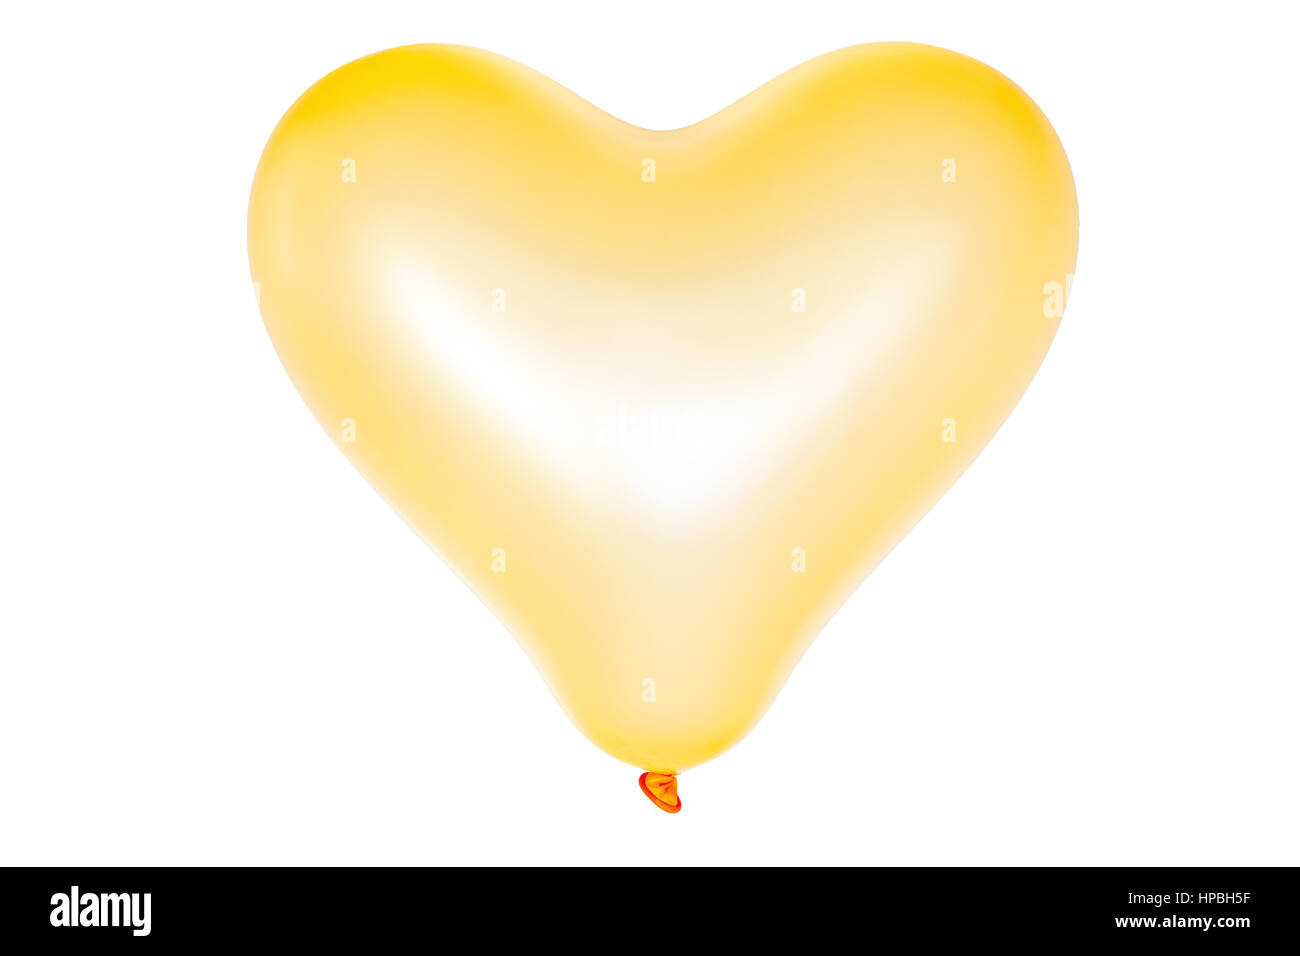 Heart shape balloon isolated on white Stock Photo